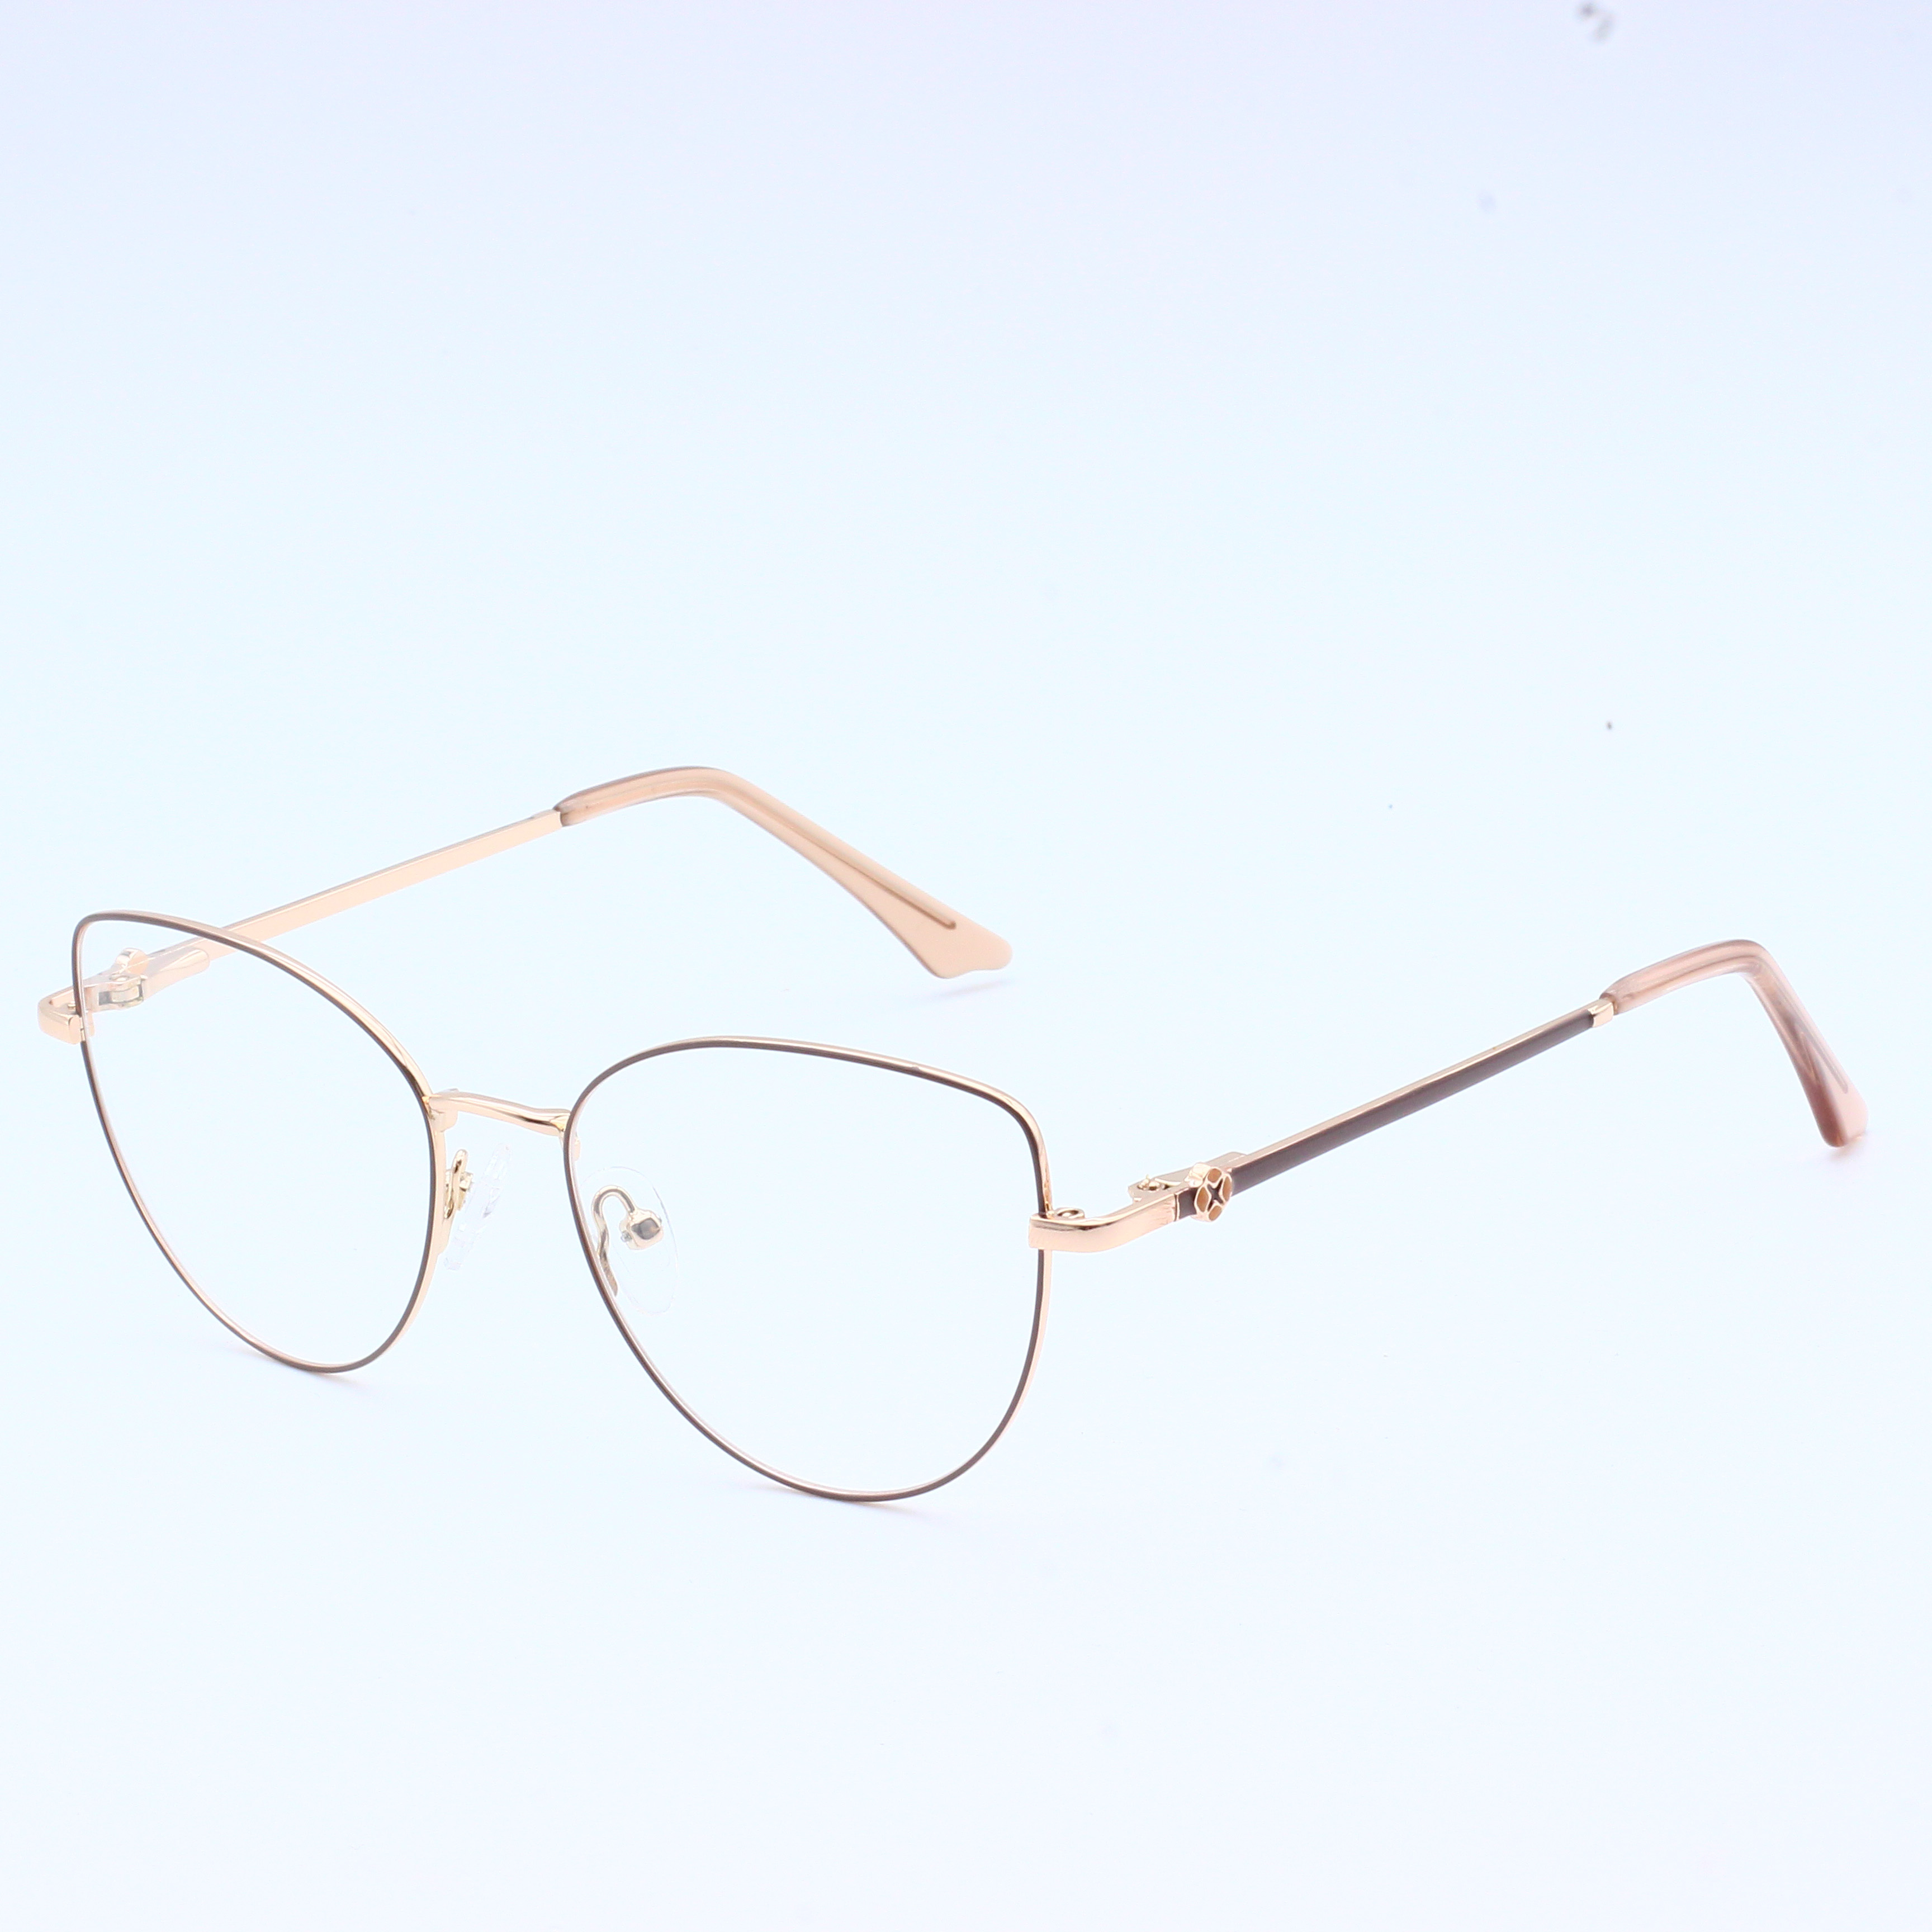 चश्मे का फ्रेम धातु का चश्मा कांच का फ्रेम (7)